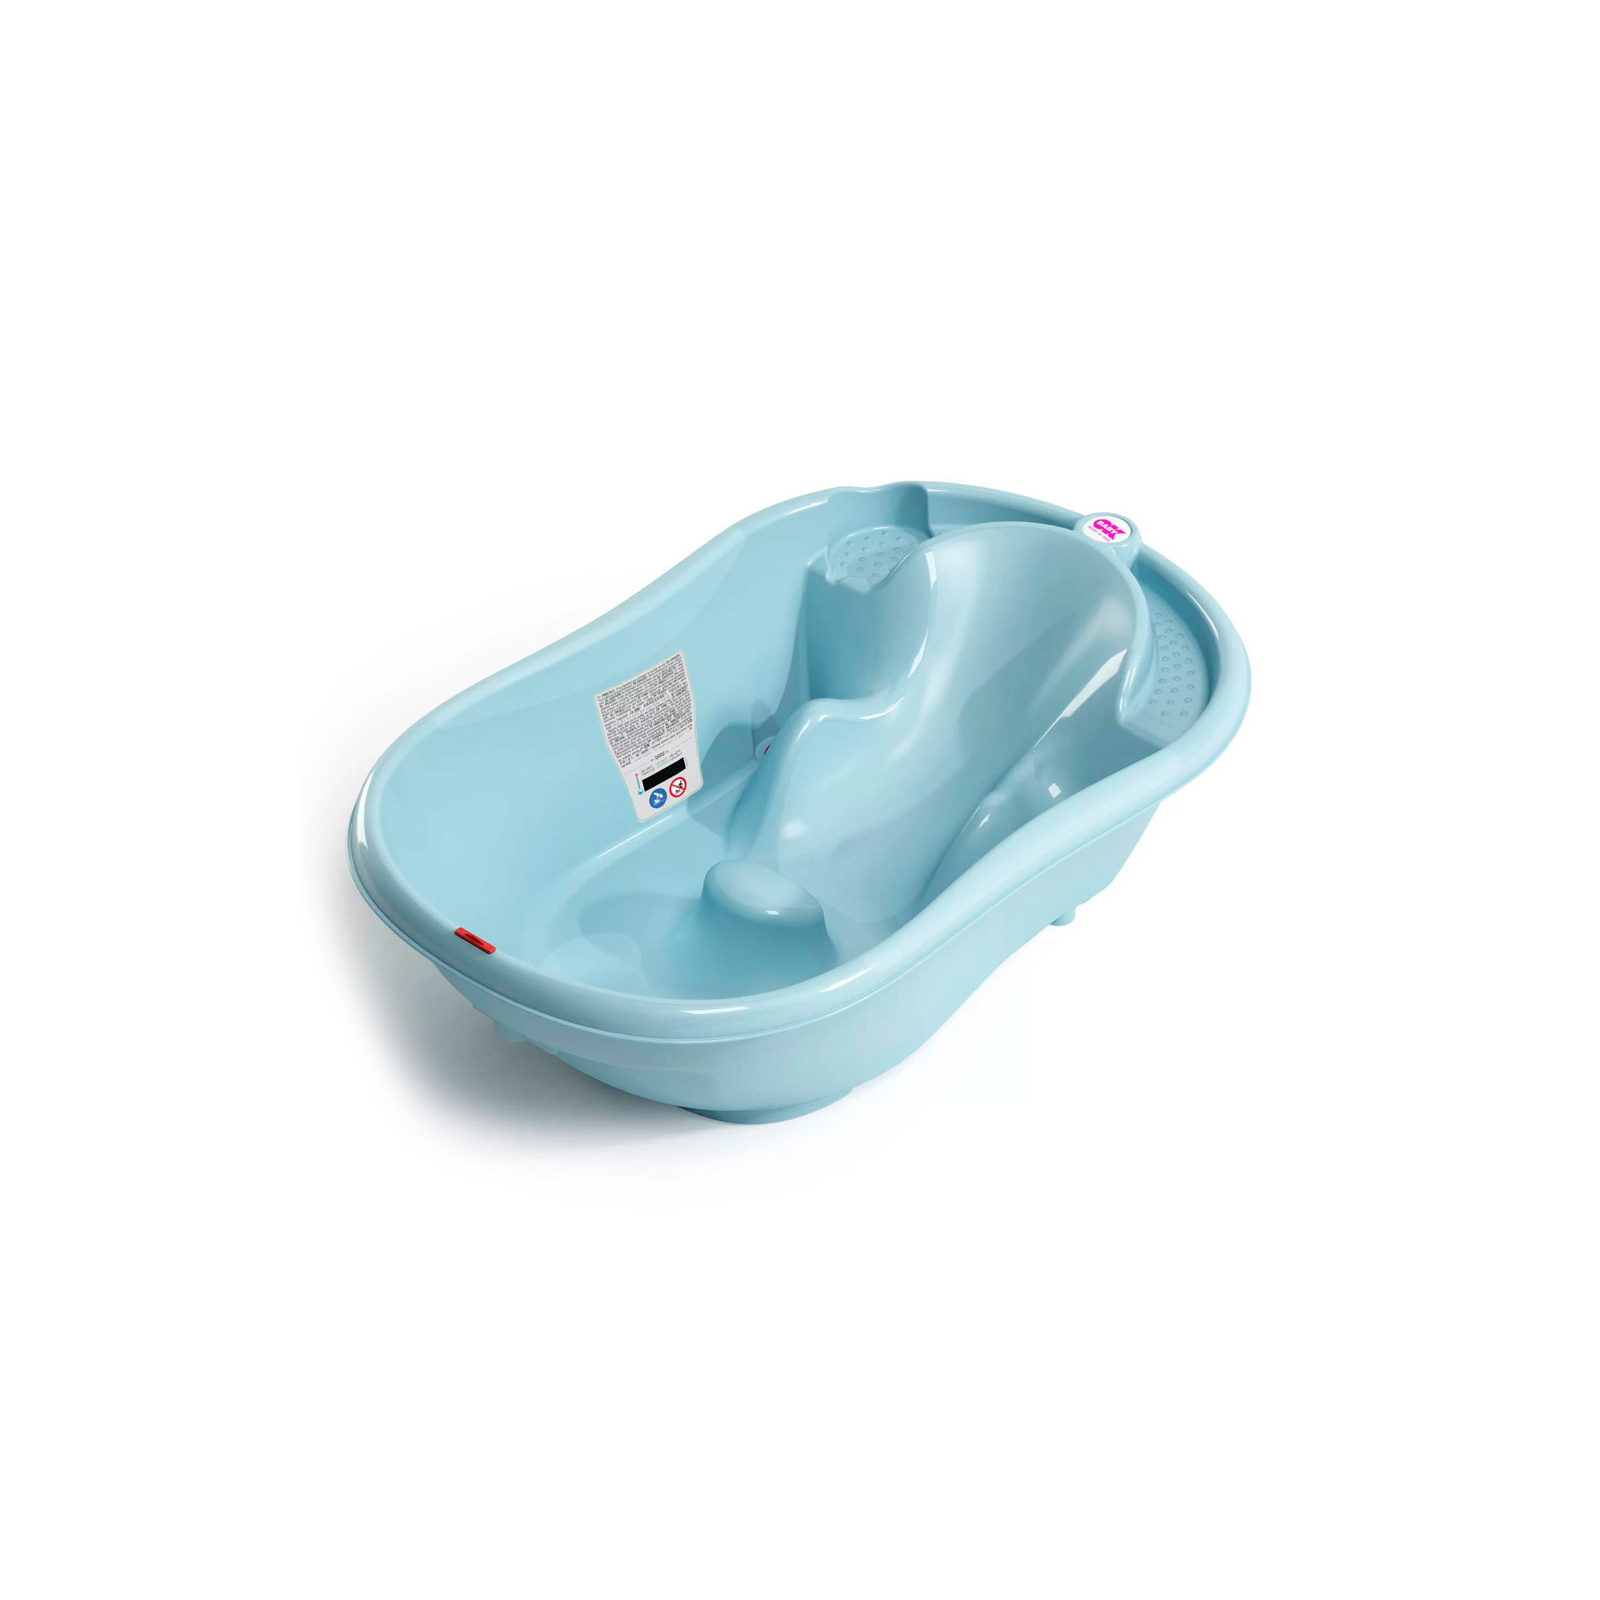 Ванночка Ok Baby з анатомічною гіркою і термодатчиком (блакитний) (38231500)